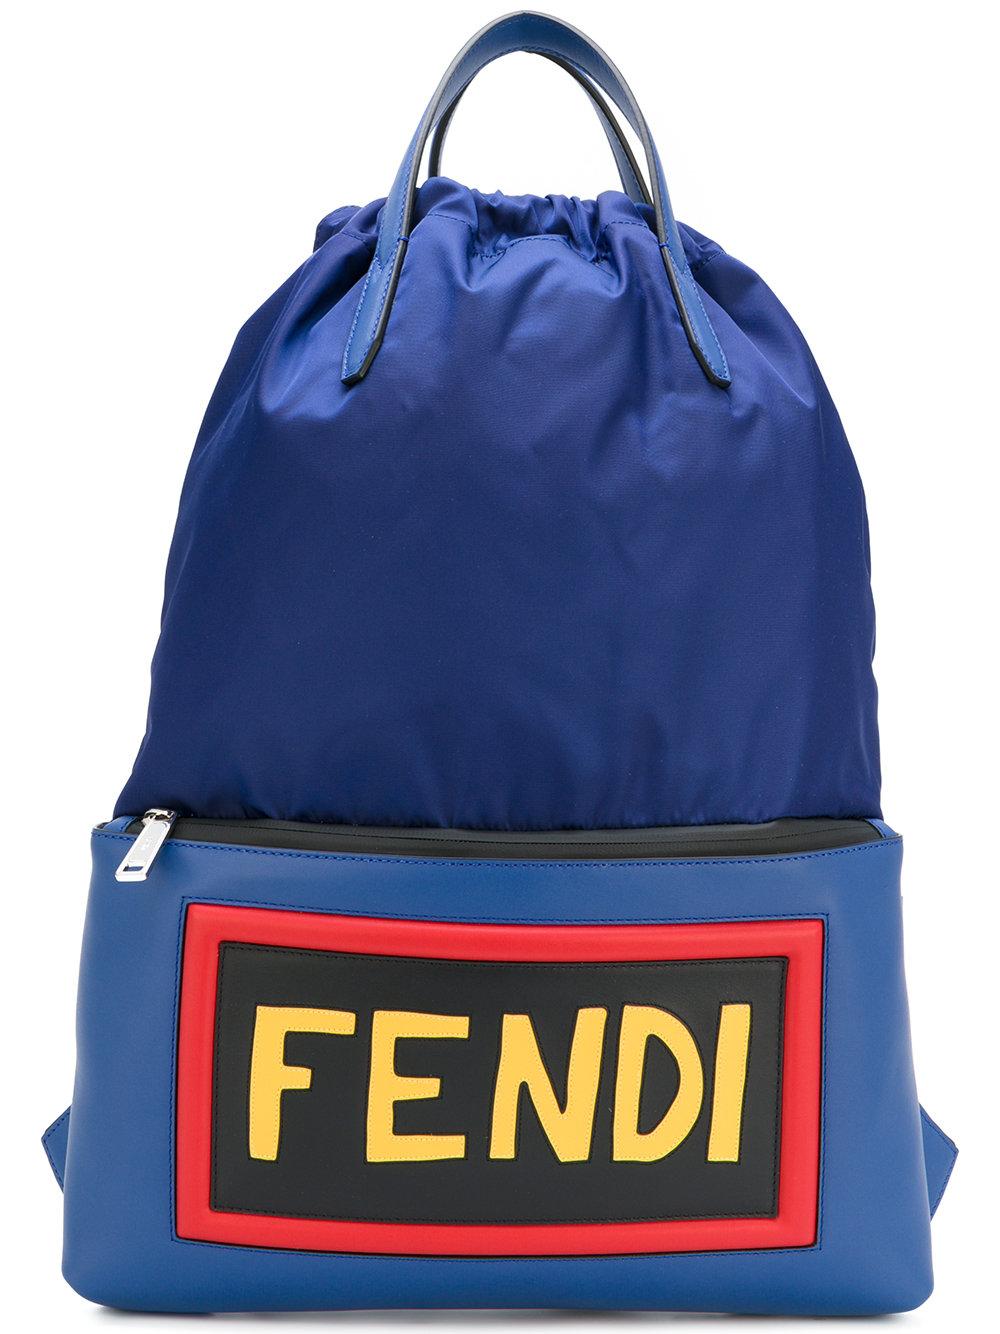 Fendi Logo Backpack in Blue for Men - Lyst